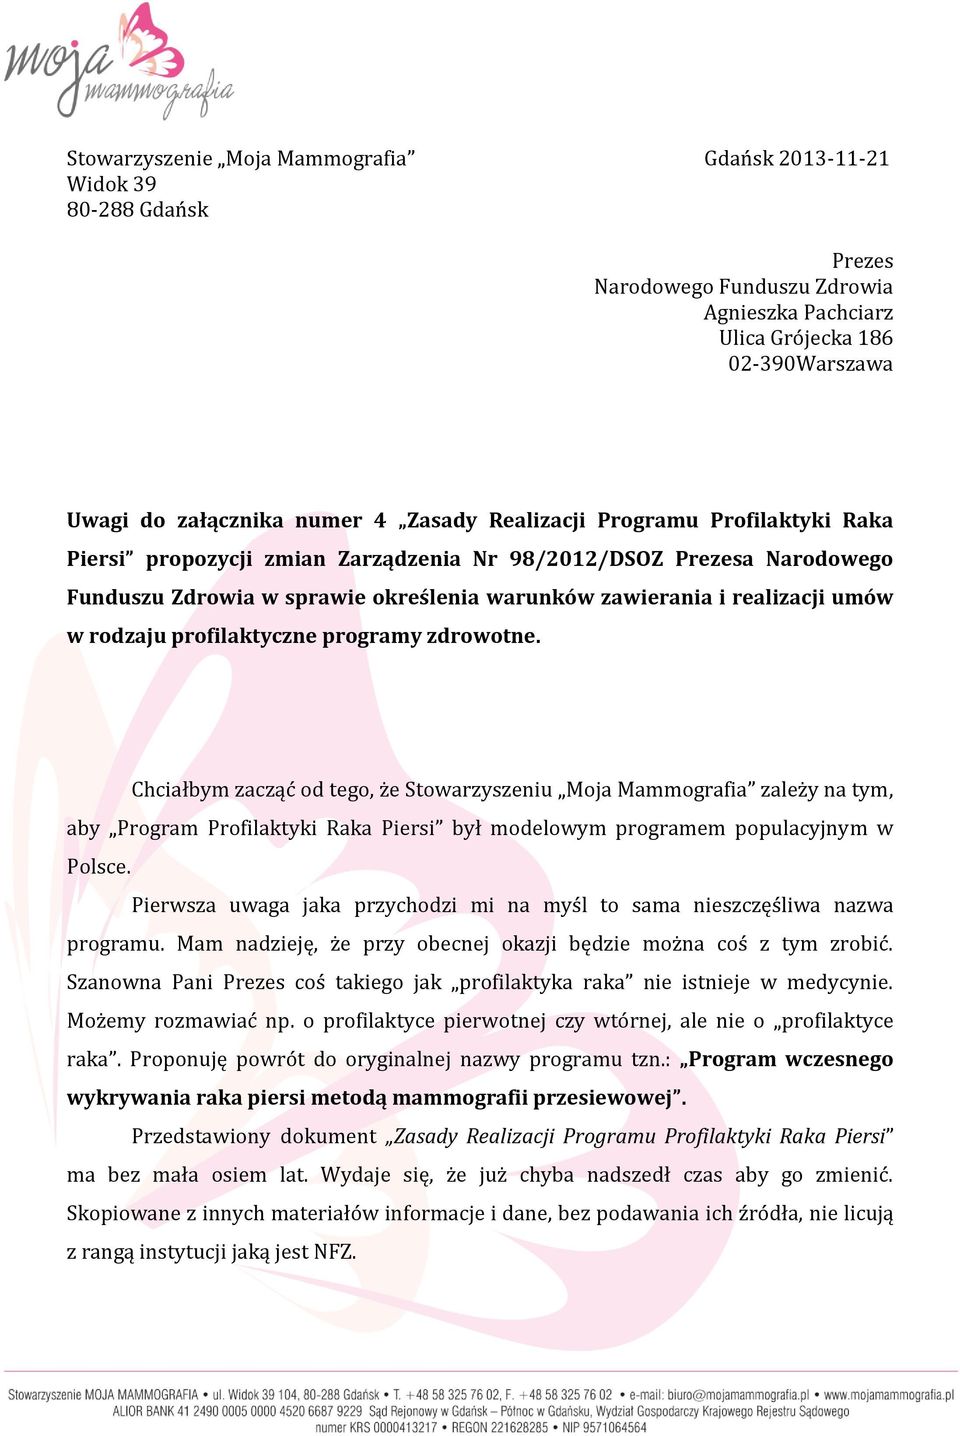 profilaktyczne programy zdrowotne. Chciałbym zacząć od tego, że Stowarzyszeniu Moja Mammografia zależy na tym, aby Program Profilaktyki Raka Piersi był modelowym programem populacyjnym w Polsce.